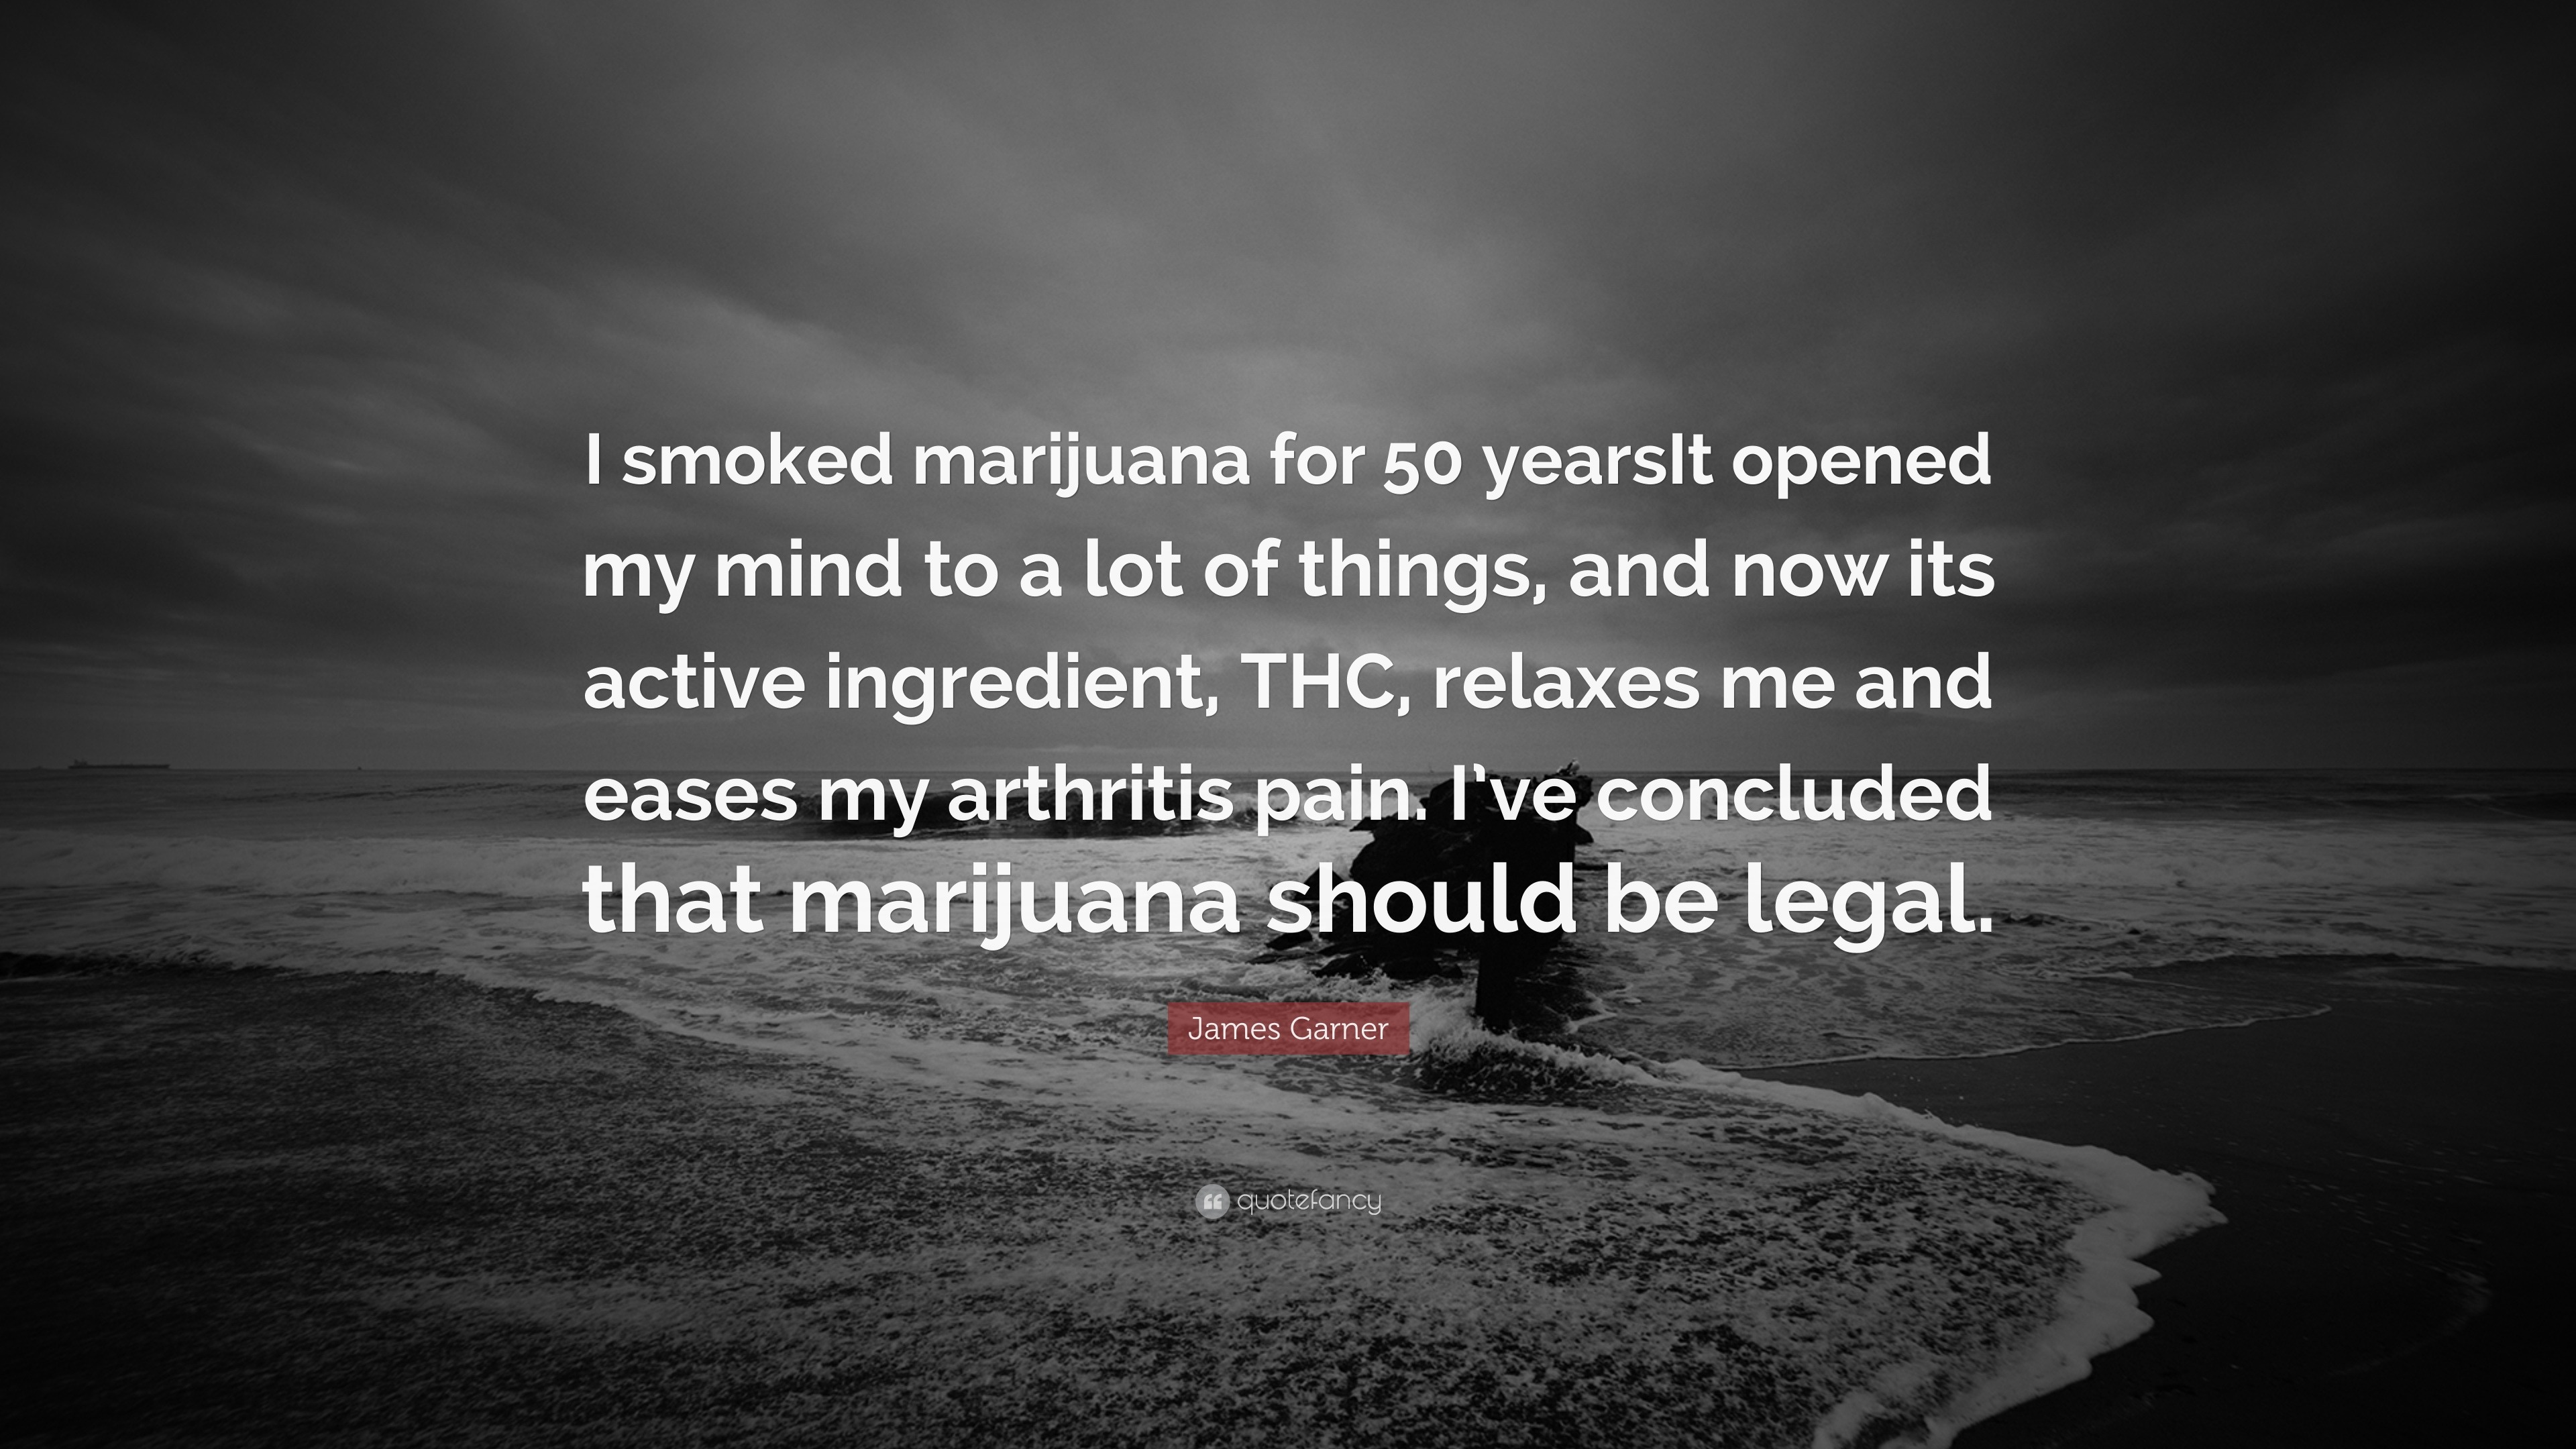 James Garner Quote: “I smoked marijuana for 50 yearsIt opened my mind